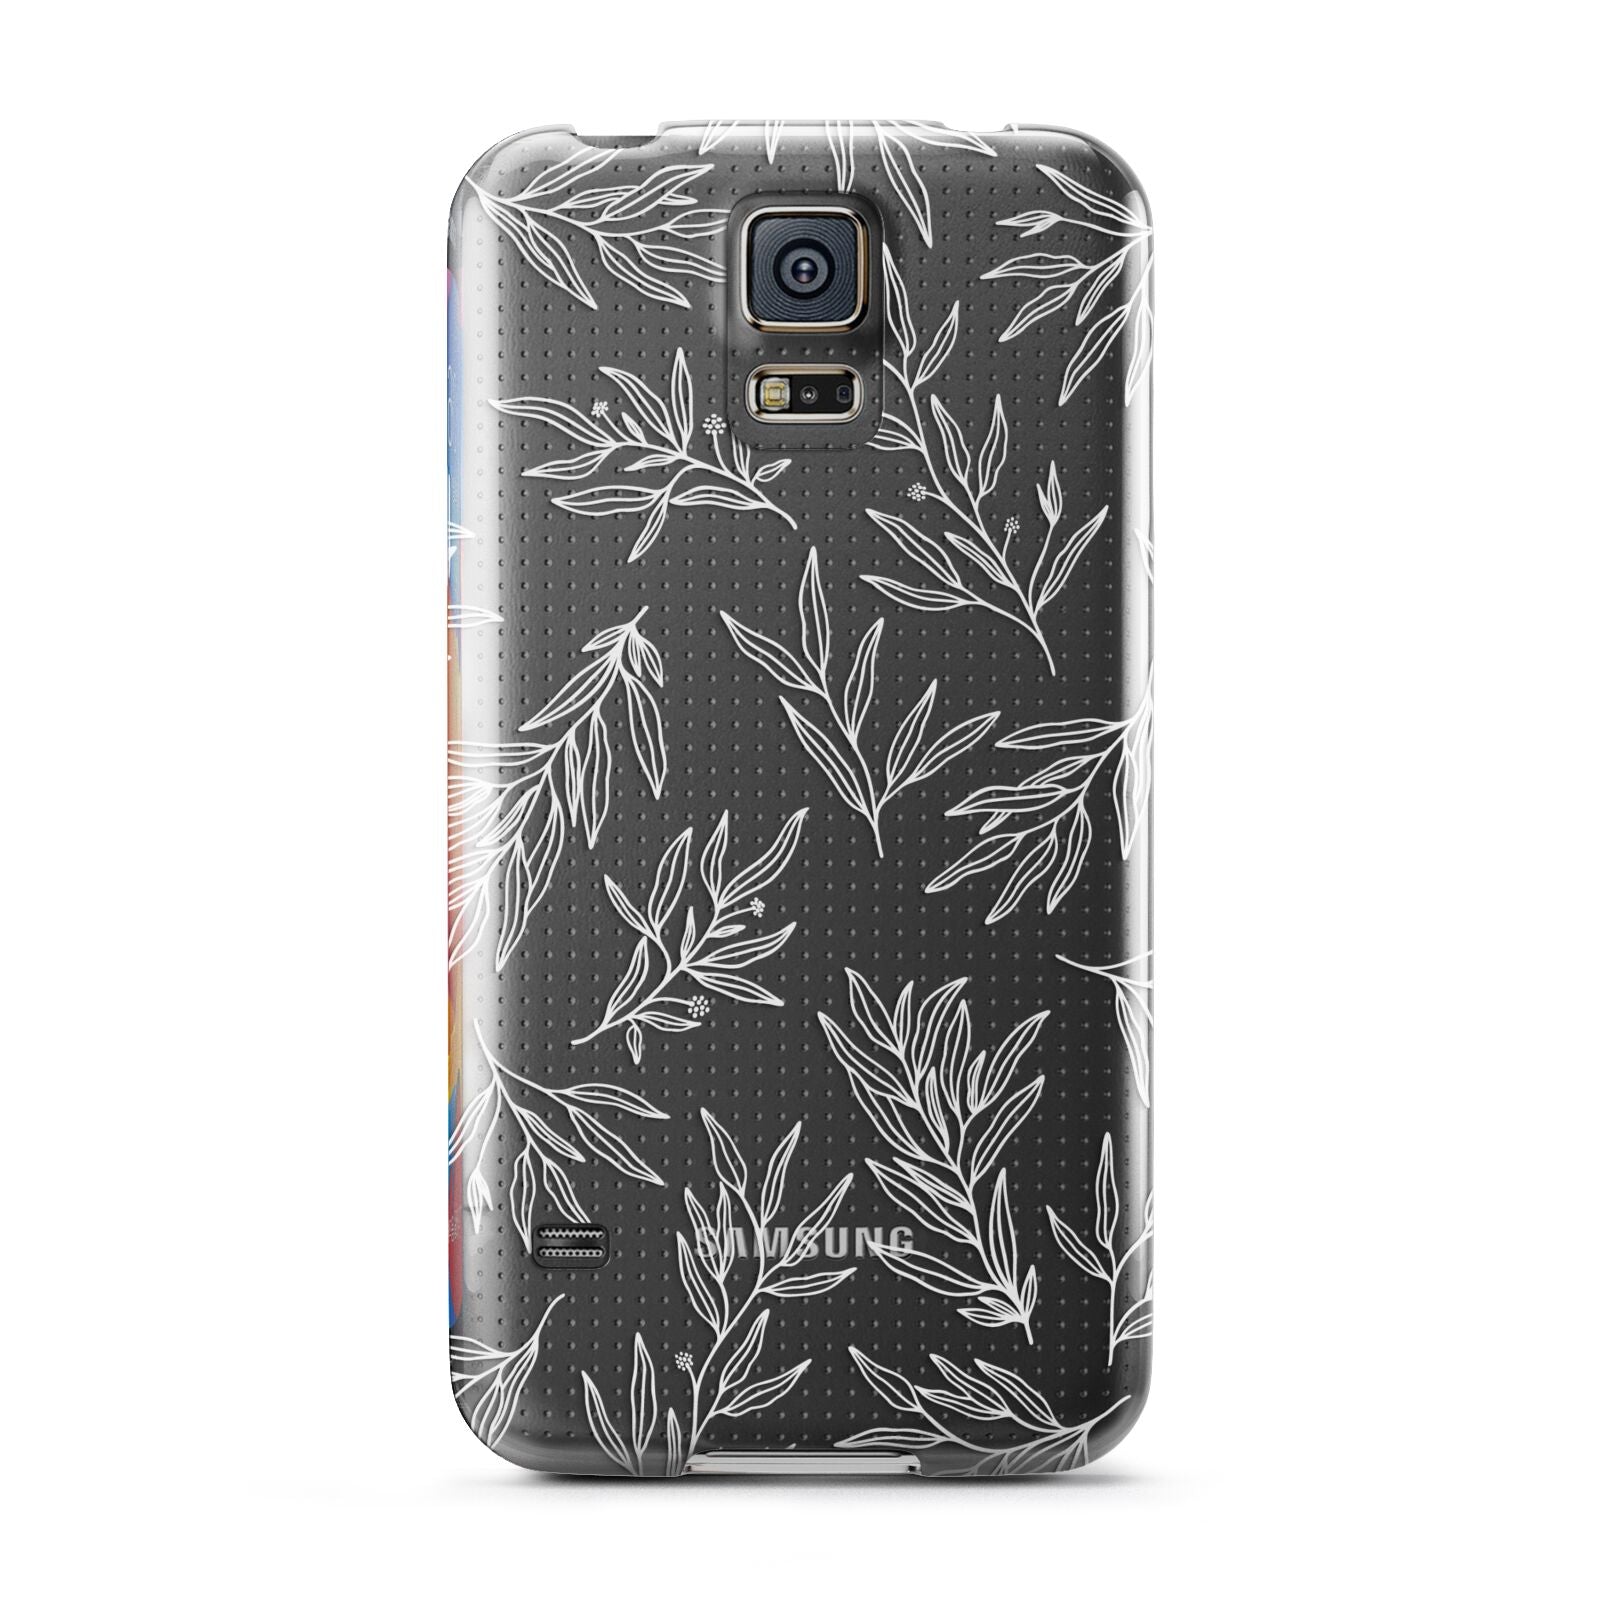 Botanical Leaf Samsung Galaxy S5 Case